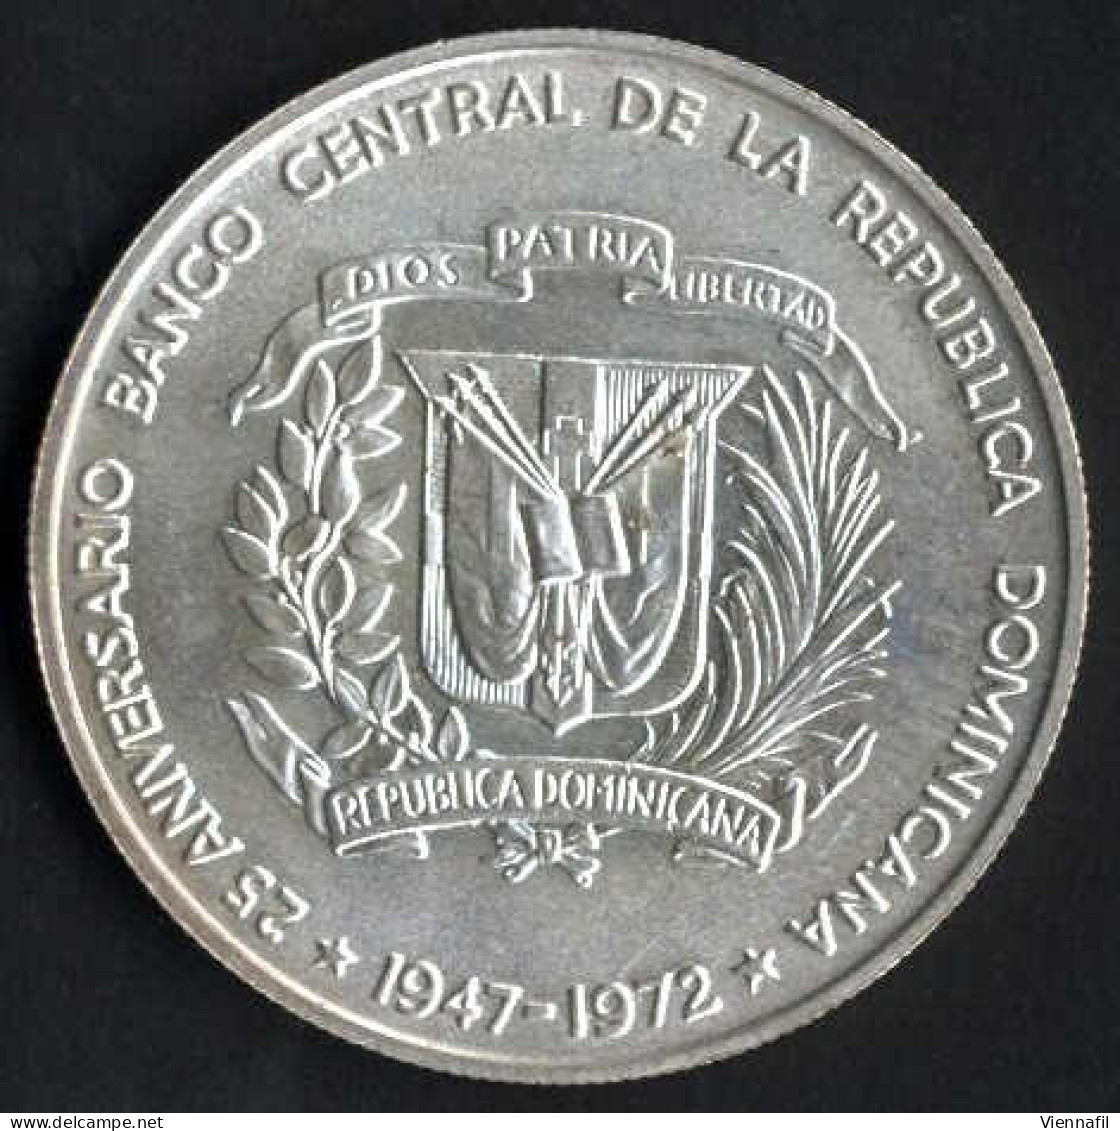 10 Dollar Johannes Paul II,1979, Und Zwei Silbermünzen 1 Peso 25 Jahre Zentralbank, 1972, Unzirkuliert Und PP, Feingewic - Dominicana